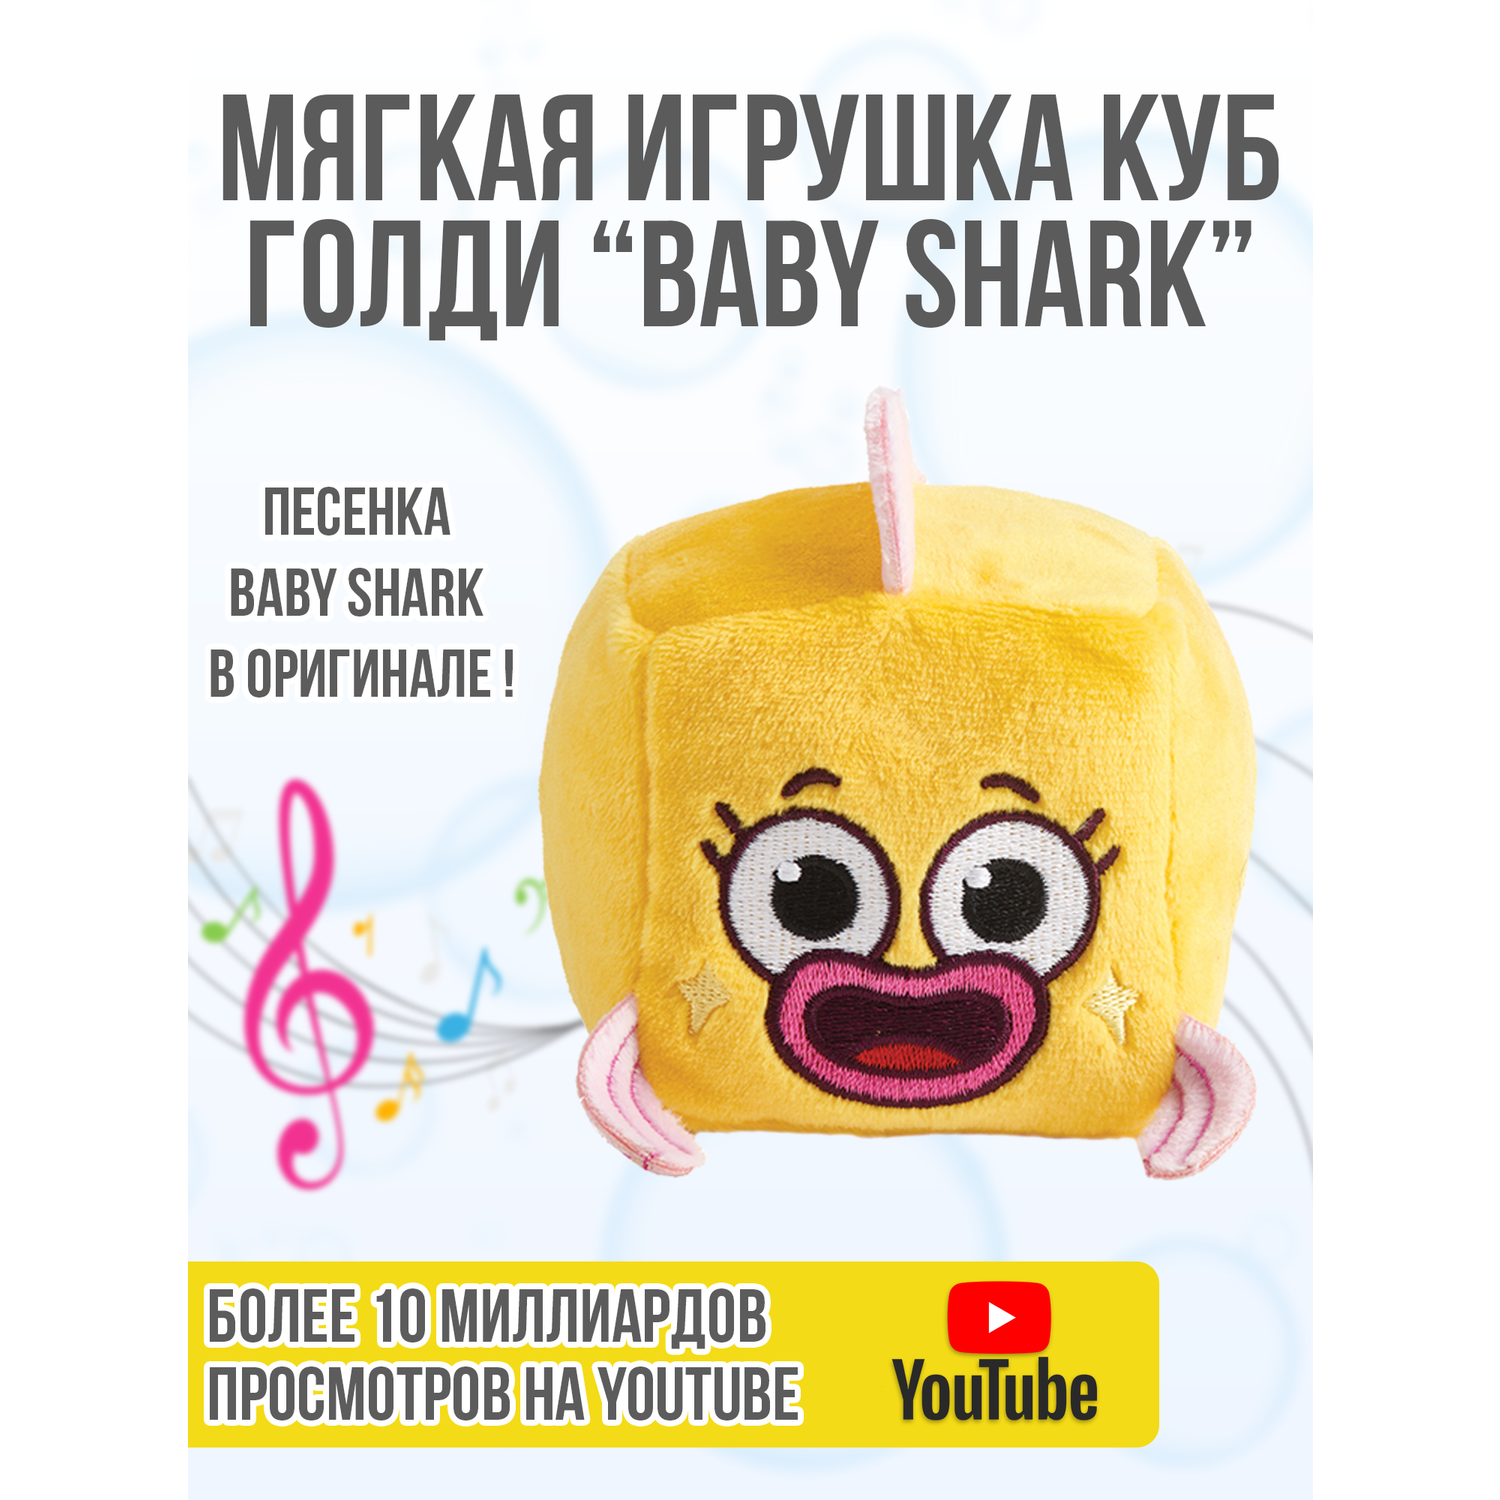 Плюшевый кубик Wow Wee Музыкальный друзья Baby Shark Голди 61507 - фото 4